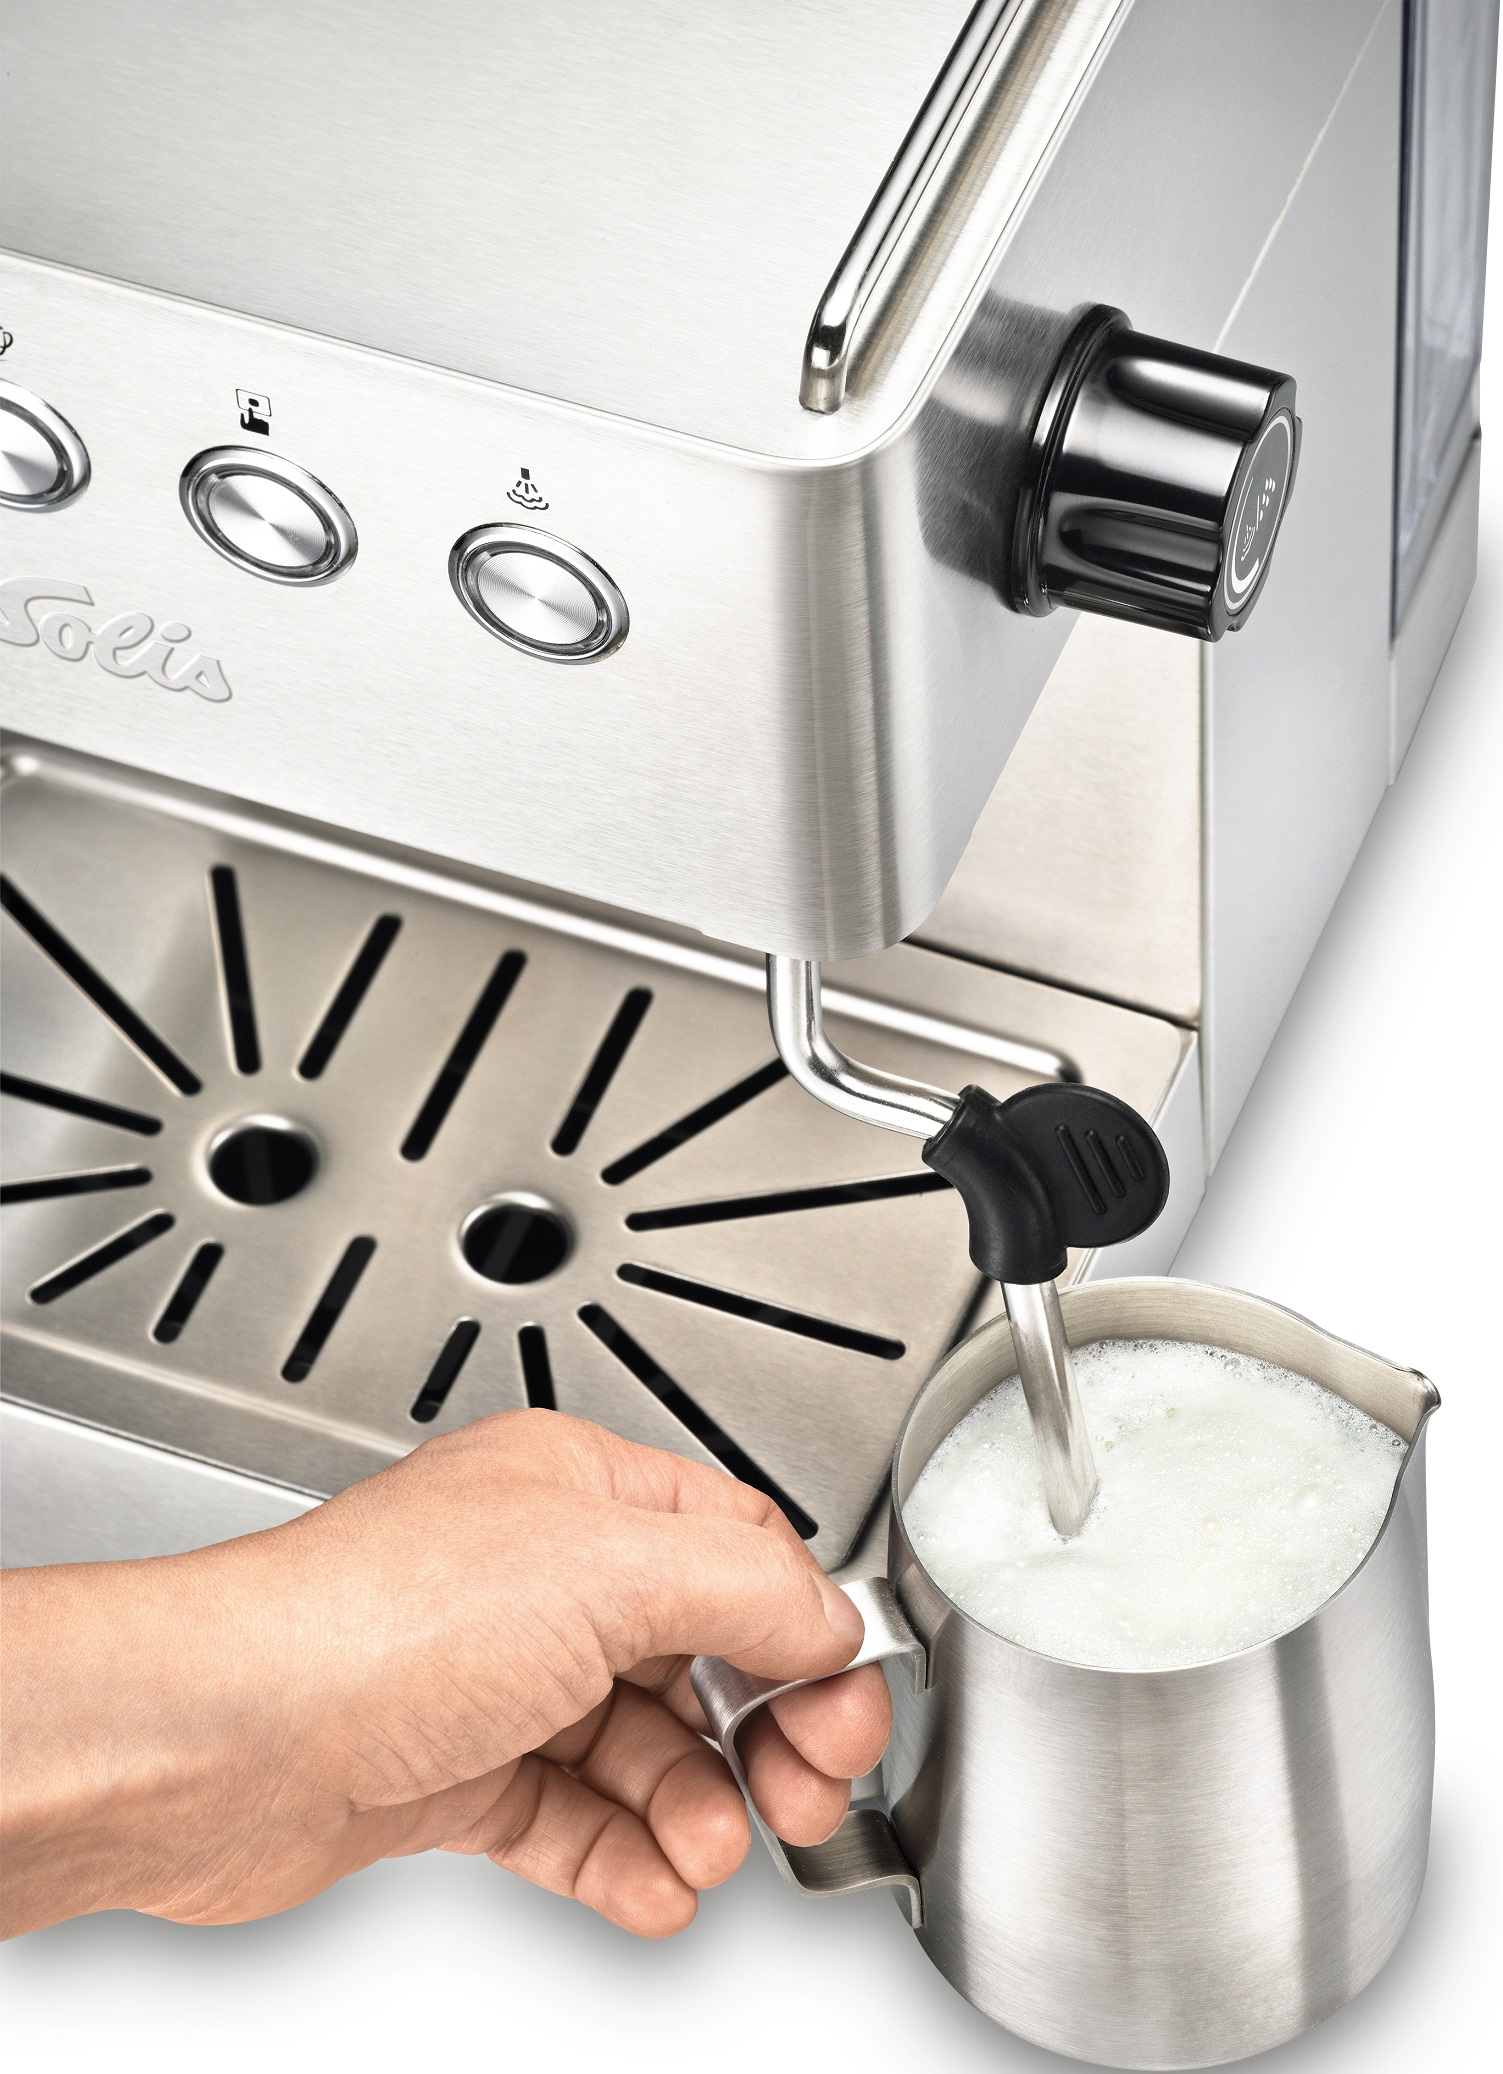 SOLIS OF SWITZERLAND Siebträgermaschine Silber Espressomaschine Gran Gusto | | Barista Milchaufschäumer 1014